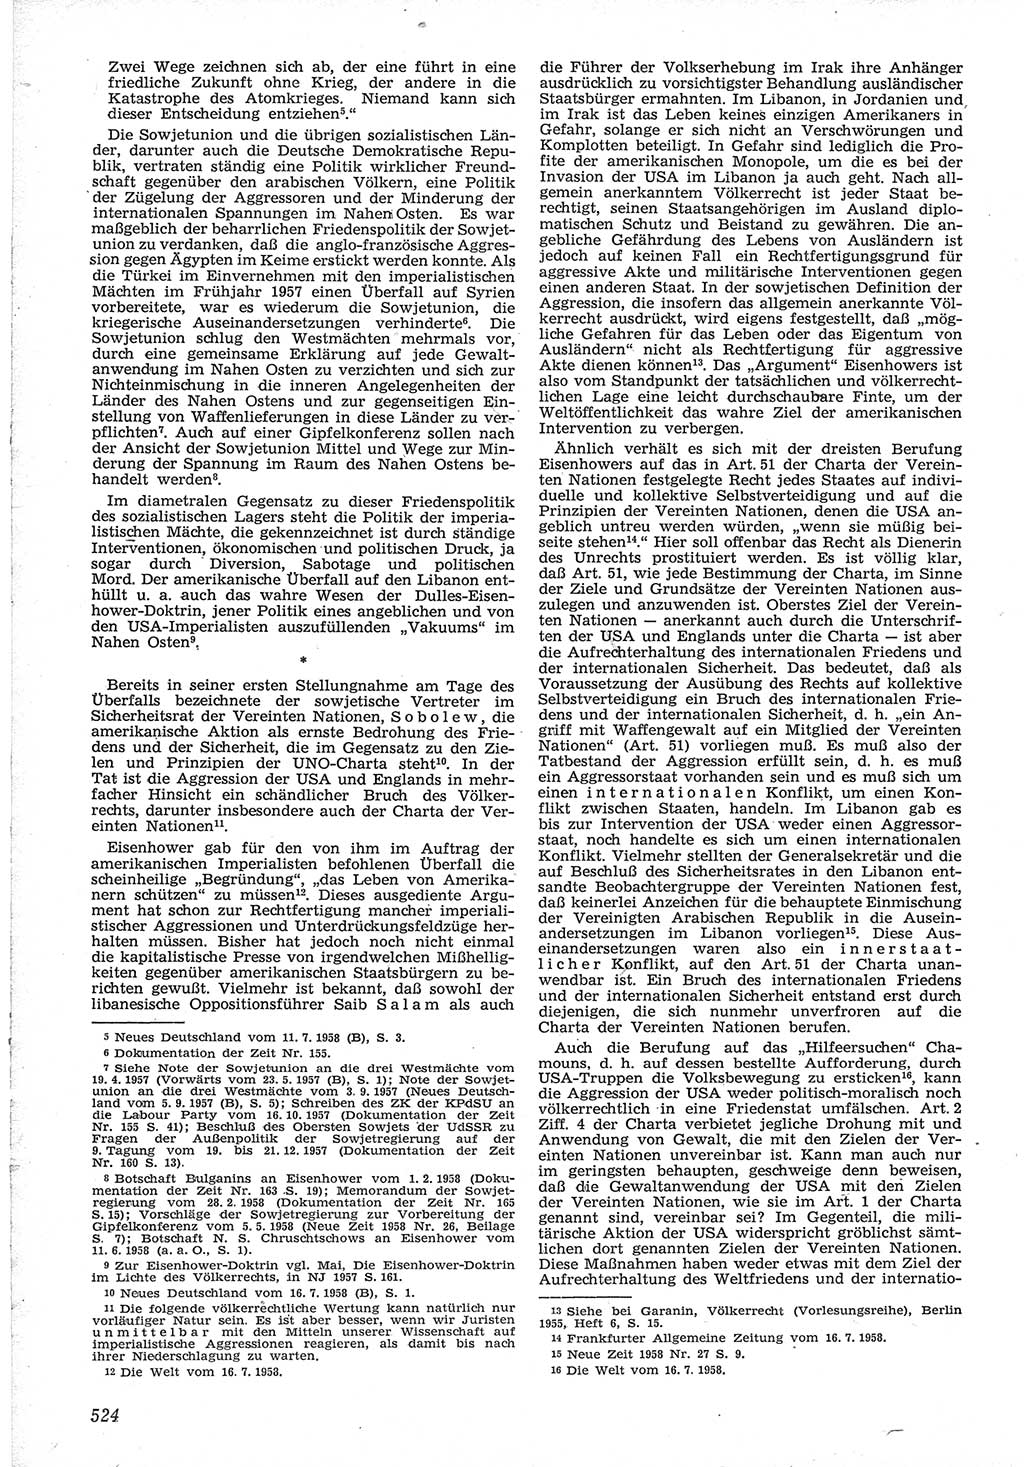 Neue Justiz (NJ), Zeitschrift für Recht und Rechtswissenschaft [Deutsche Demokratische Republik (DDR)], 12. Jahrgang 1958, Seite 524 (NJ DDR 1958, S. 524)